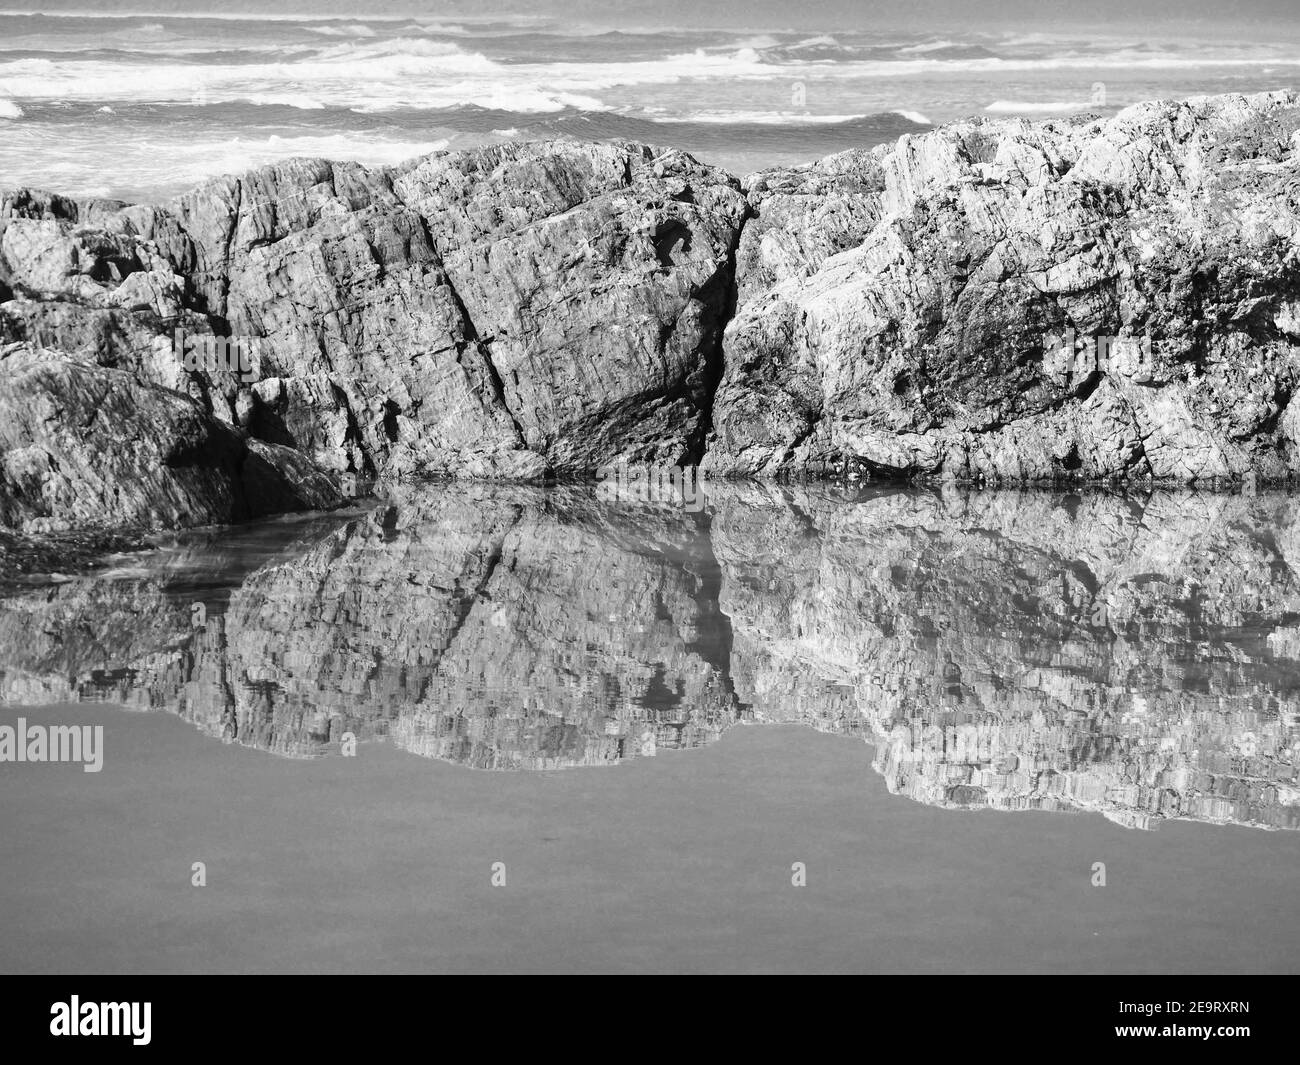 De magnifiques reflets. Les rochers bordant la piscine se réfléchit et se reflétaient dans l'eau salée, en regardant au-delà de l'océan Pacifique. Monochrome Banque D'Images